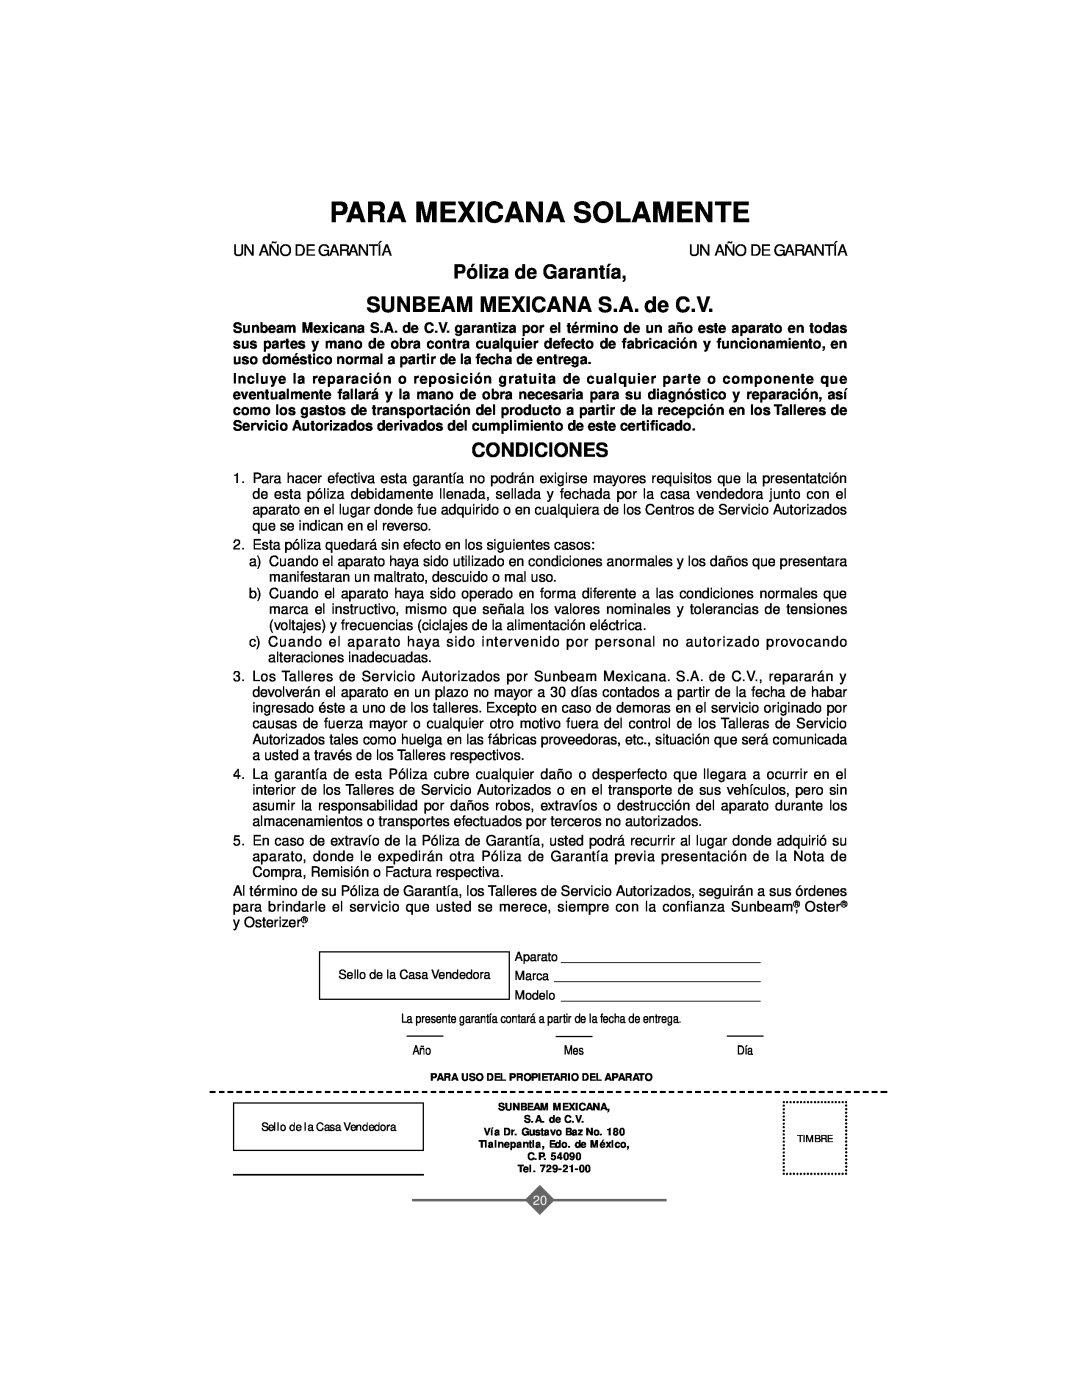 Sunbeam 32863281 instruction manual Para Mexicana Solamente, SUNBEAM MEXICANA S.A. de C.V, Póliza de Garantía, Condiciones 